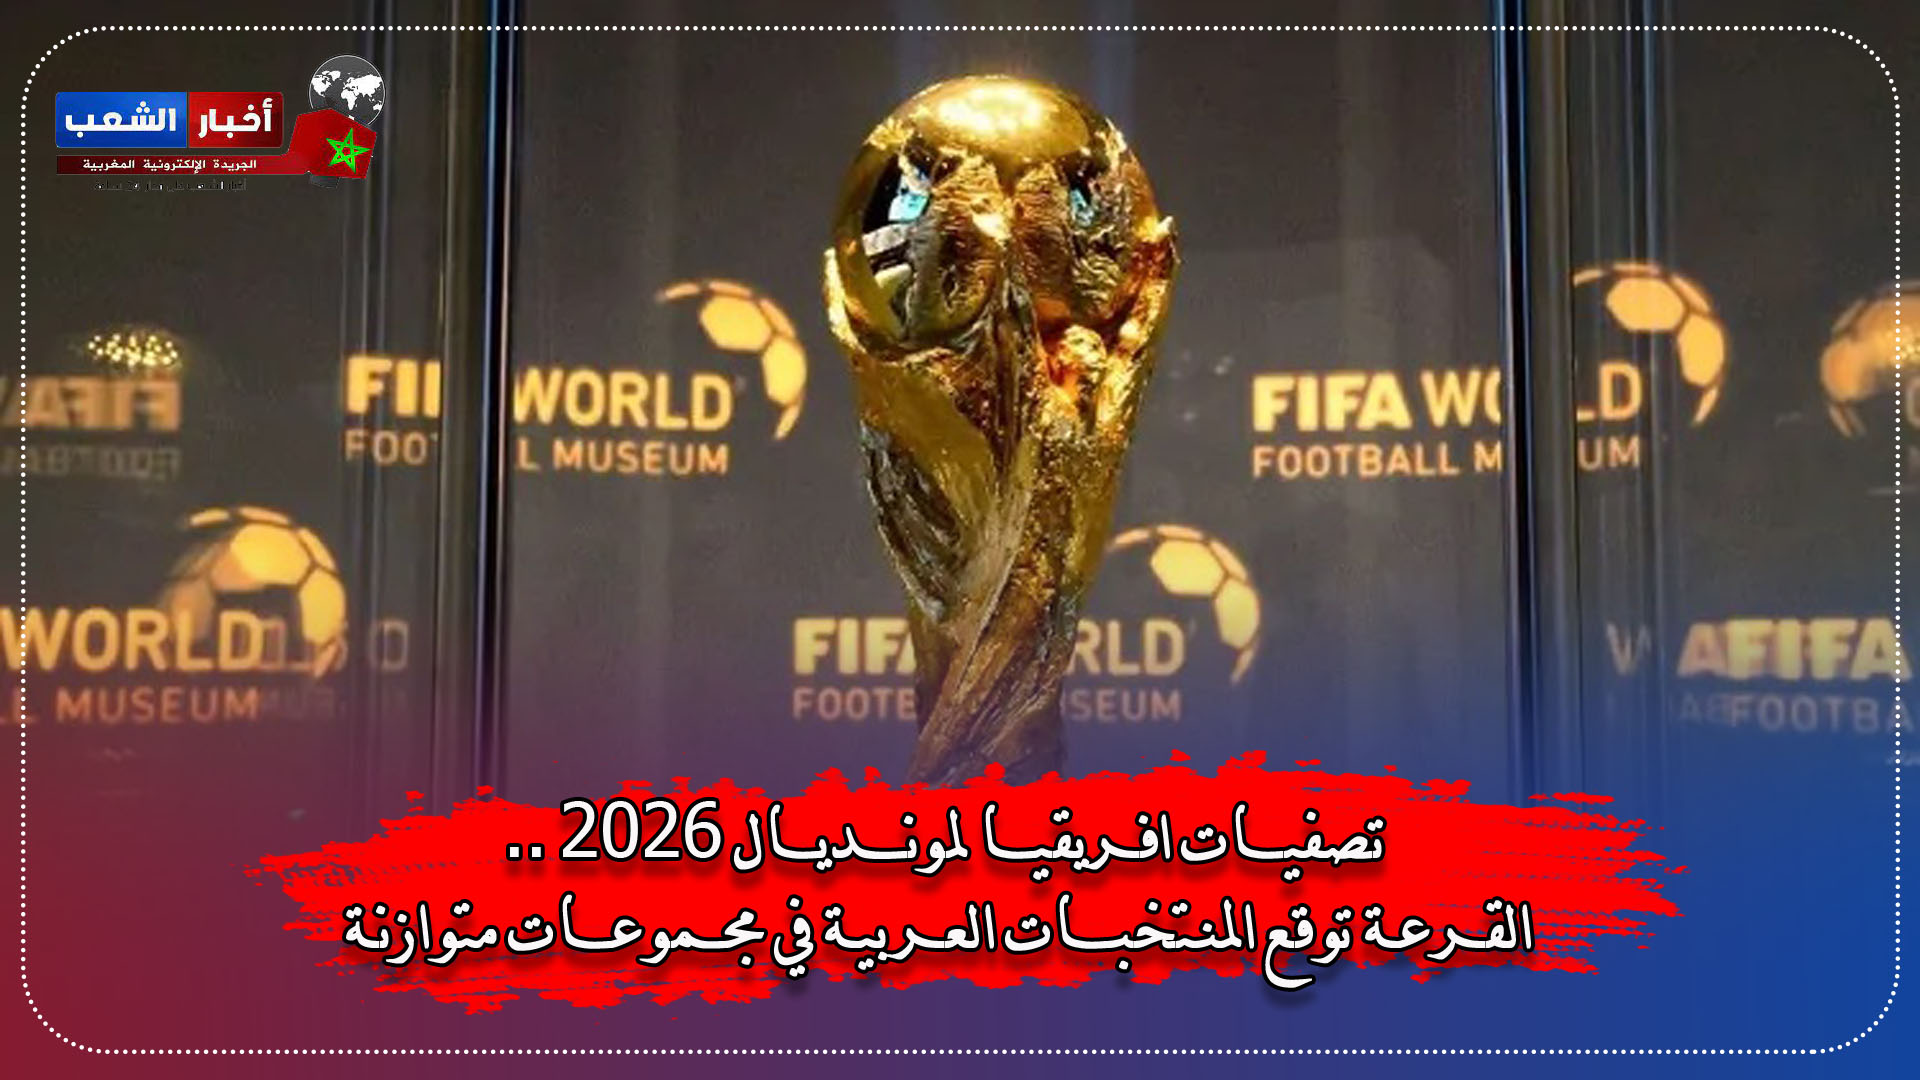 تصفيات افريقيا لمونديال 2026 .. القرعة توقع المنتخبات العربية في مجموعات متوازنة.